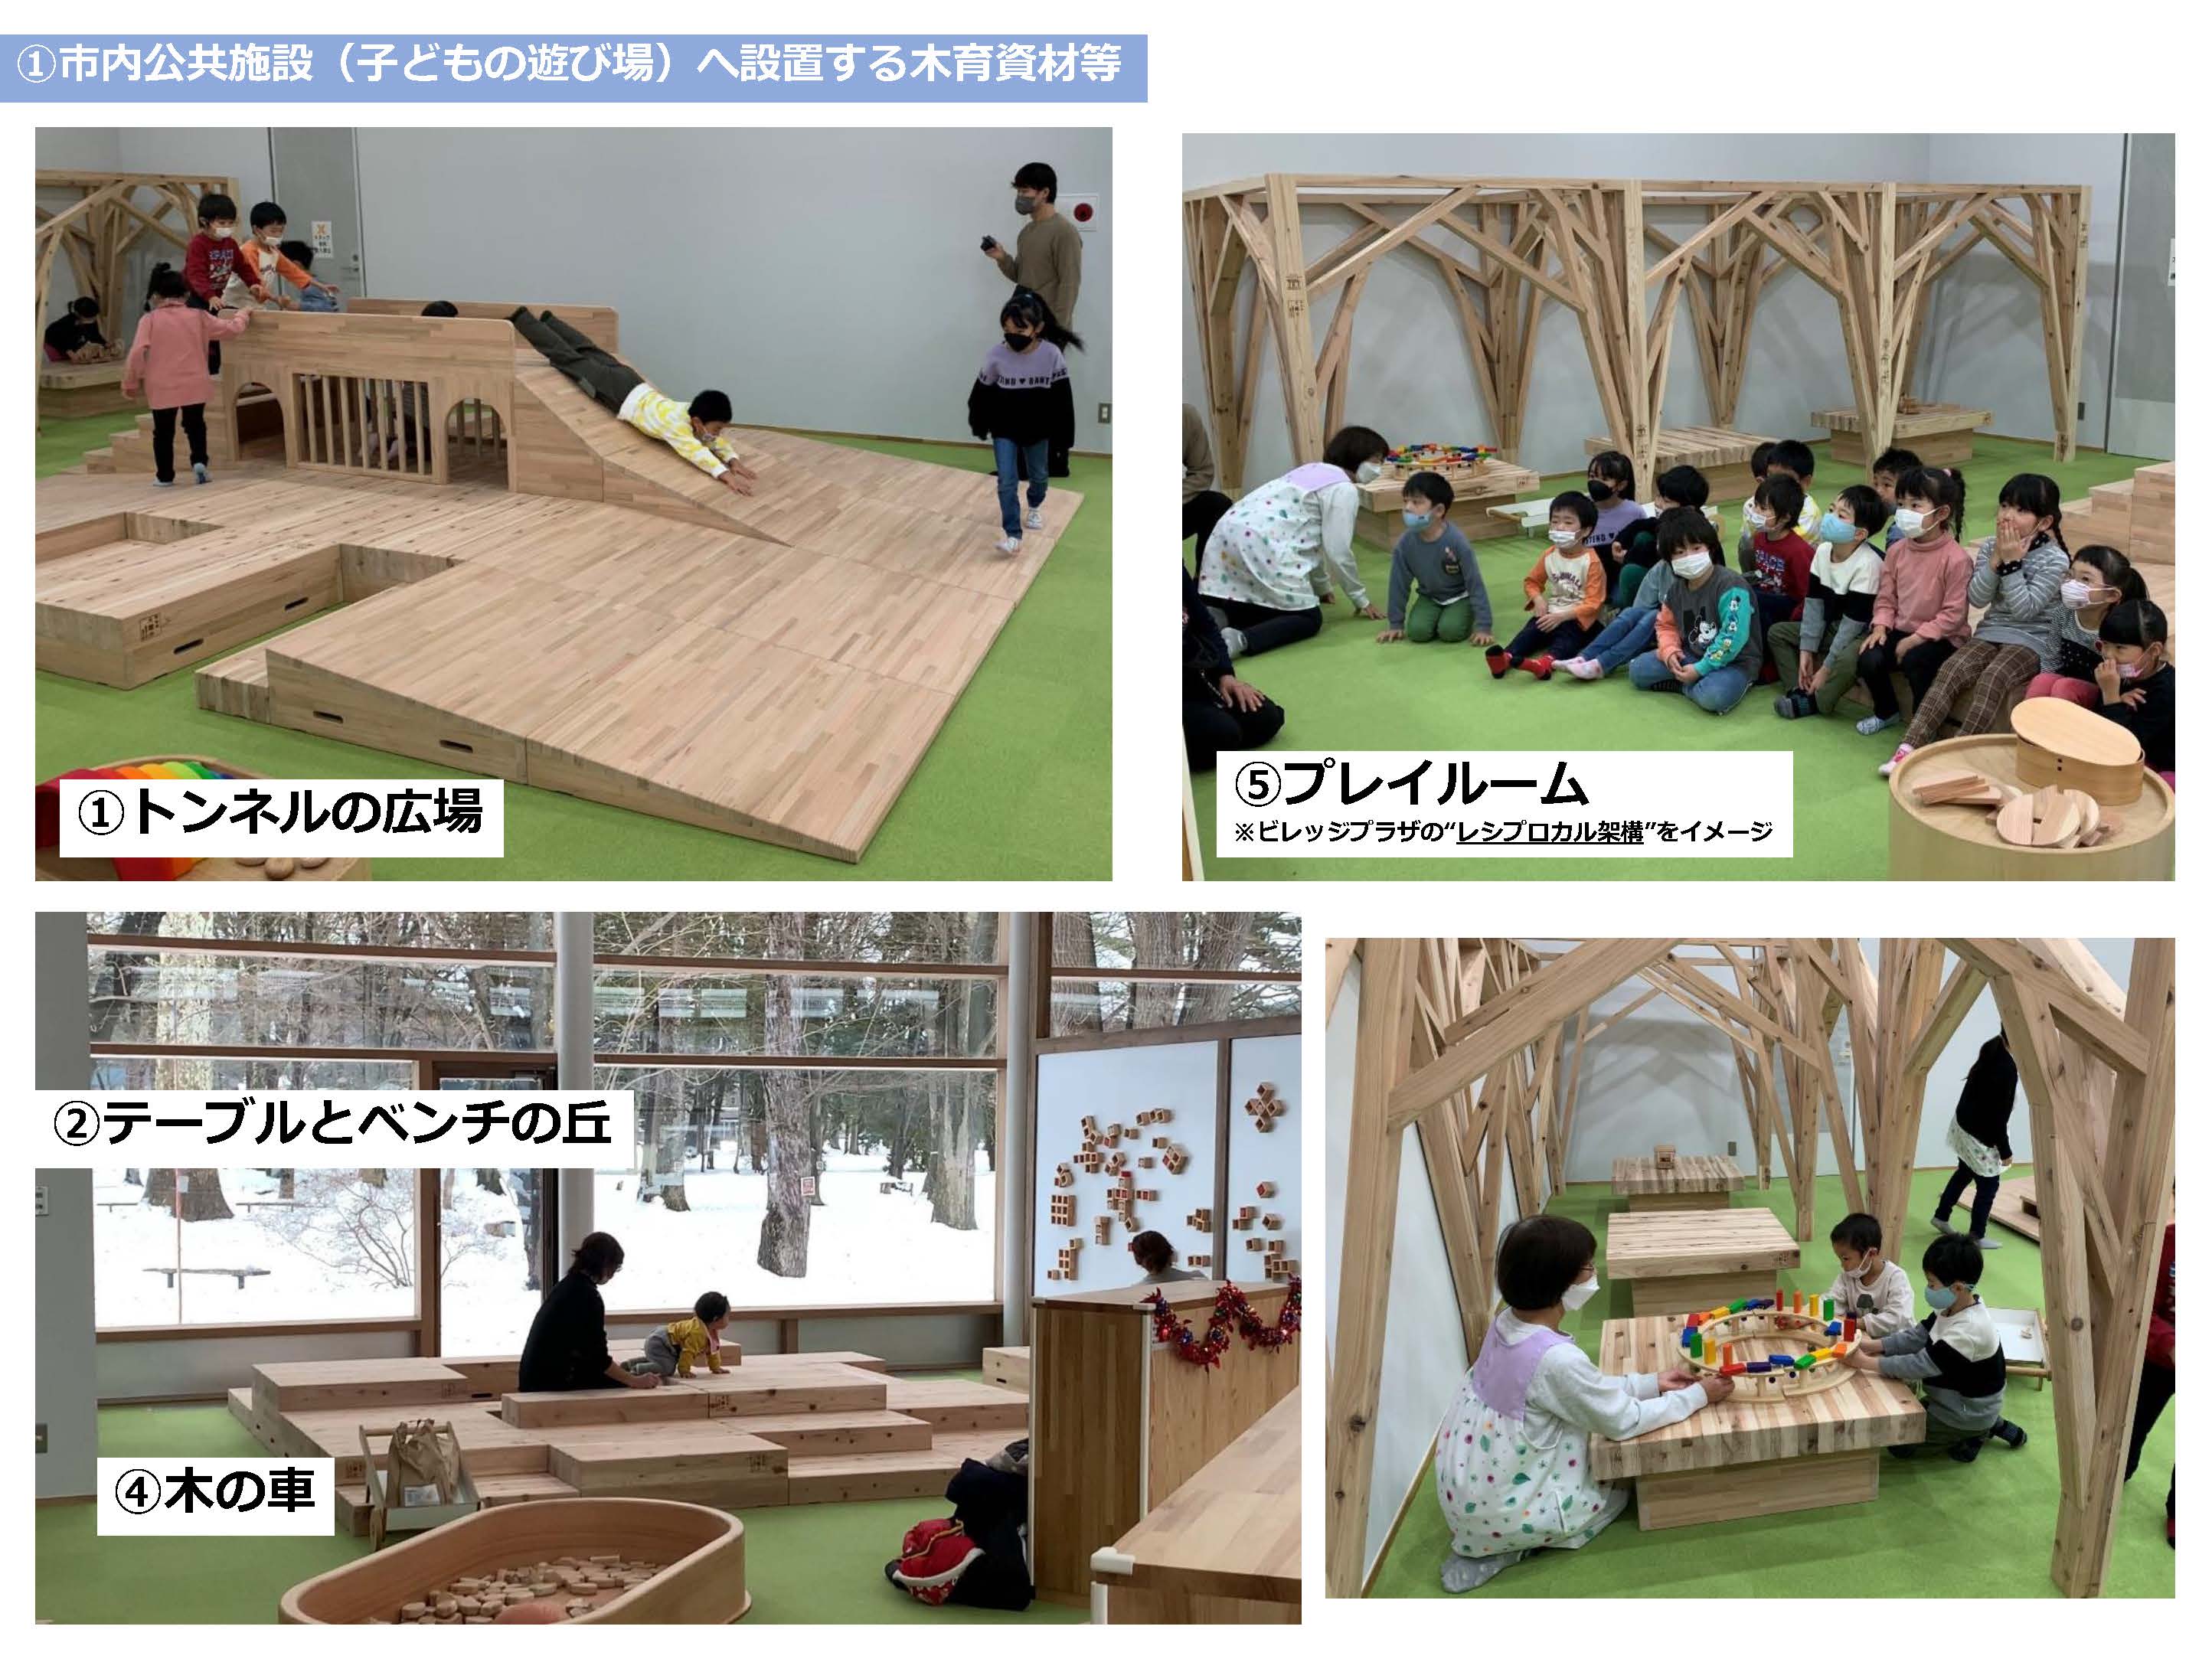 2020東京オリンピック競技大会に使用された木材のレガシー活用をまとめました